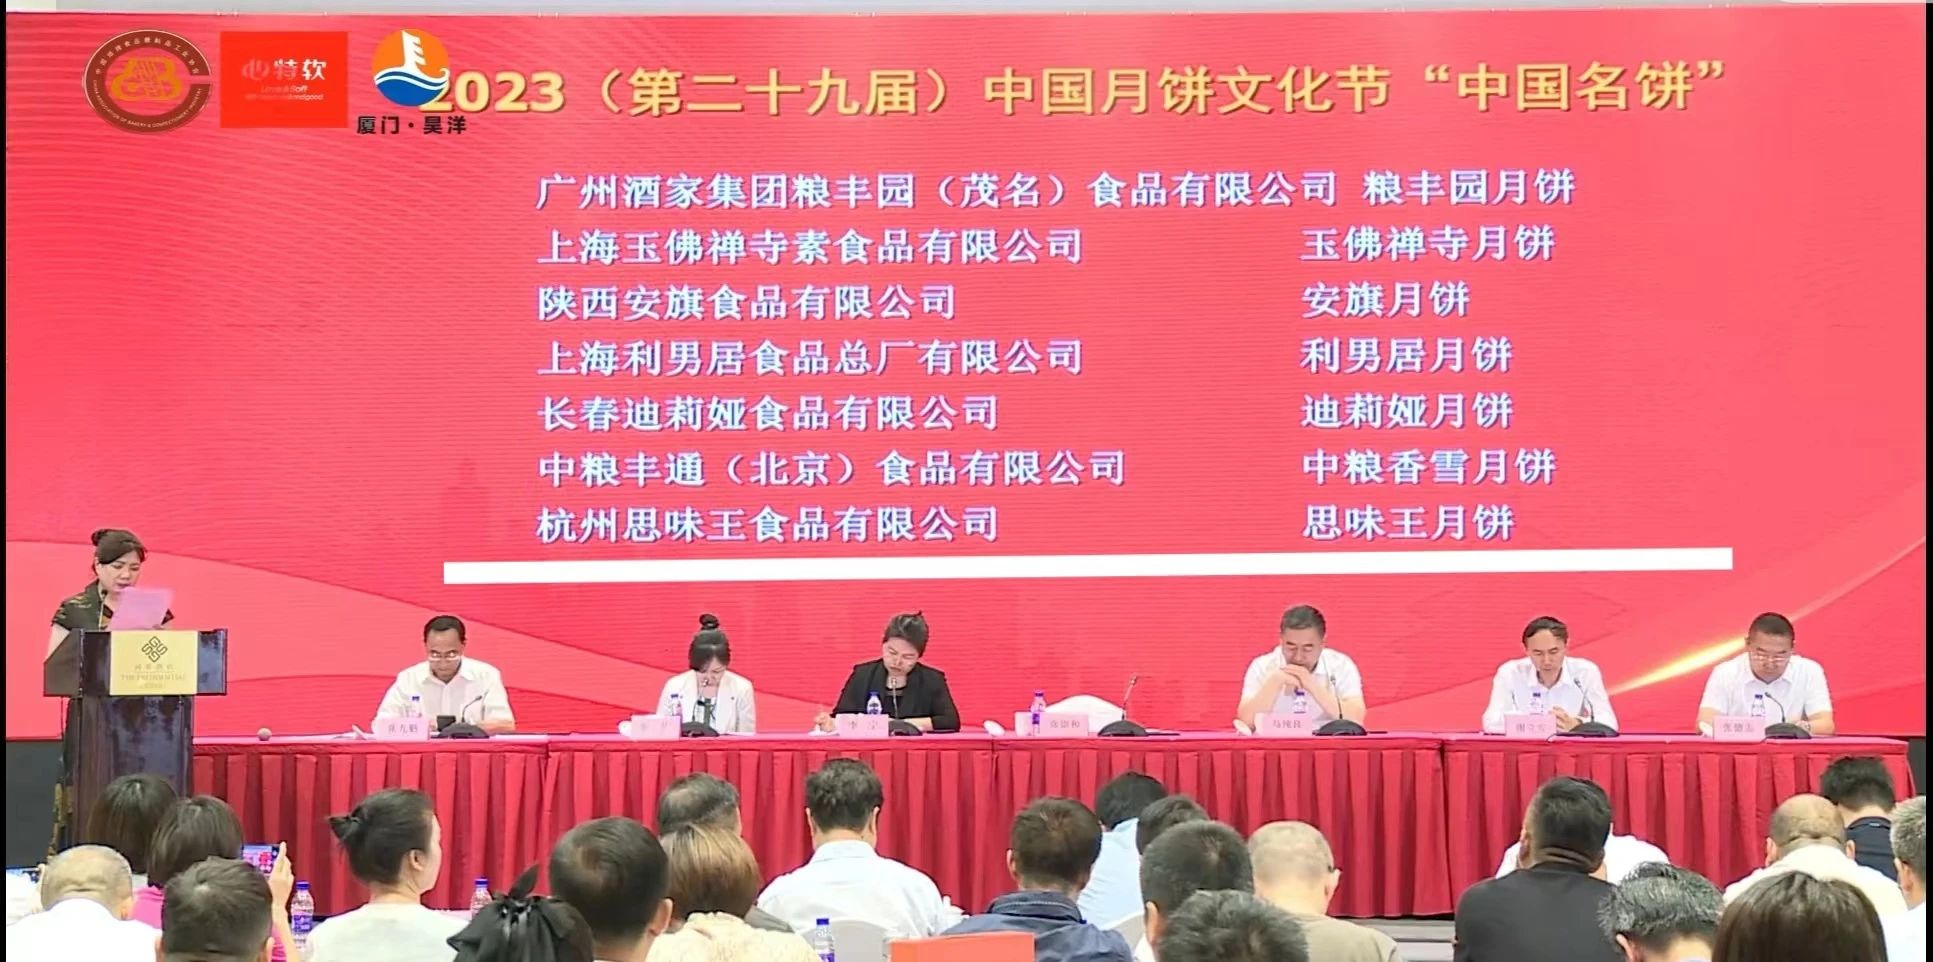 喜 报!!! 2023（第二十九届）中国月饼文化节,杭州老字号企业喜获多项荣誉